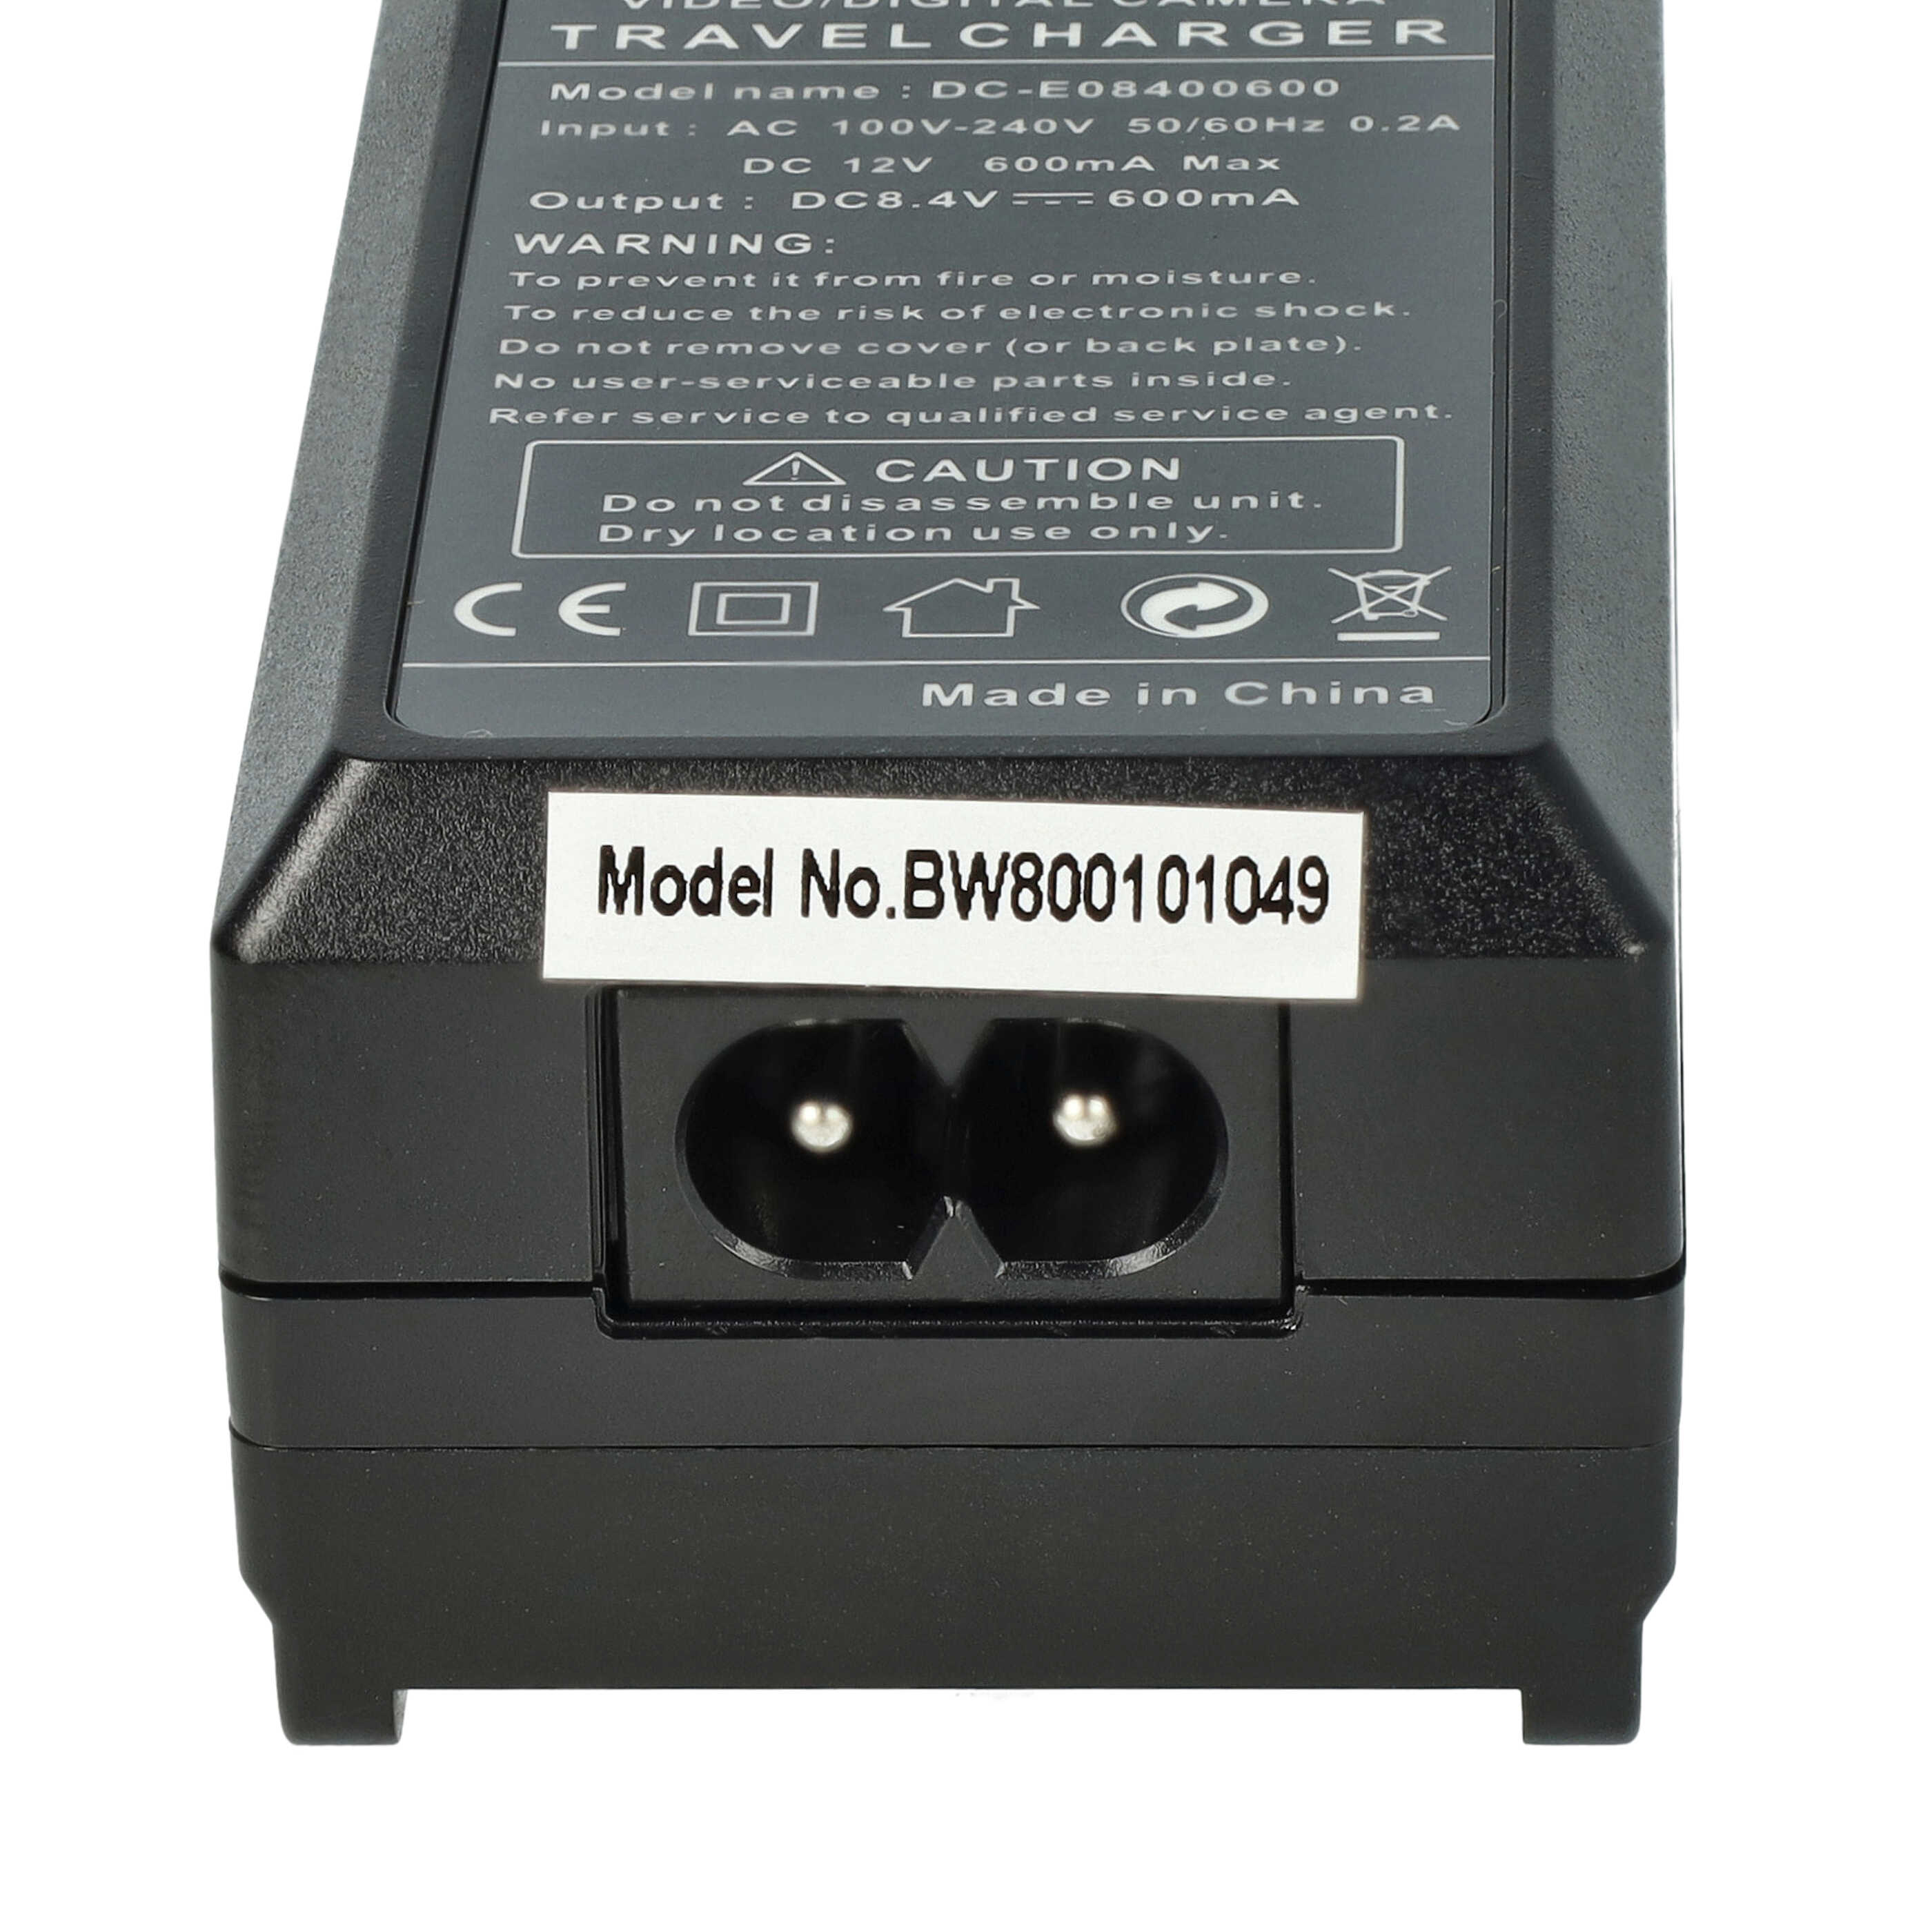 Caricabatterie + adattatore da auto per fotocamera Lumix - 0,6A 8,4V 88,5cm